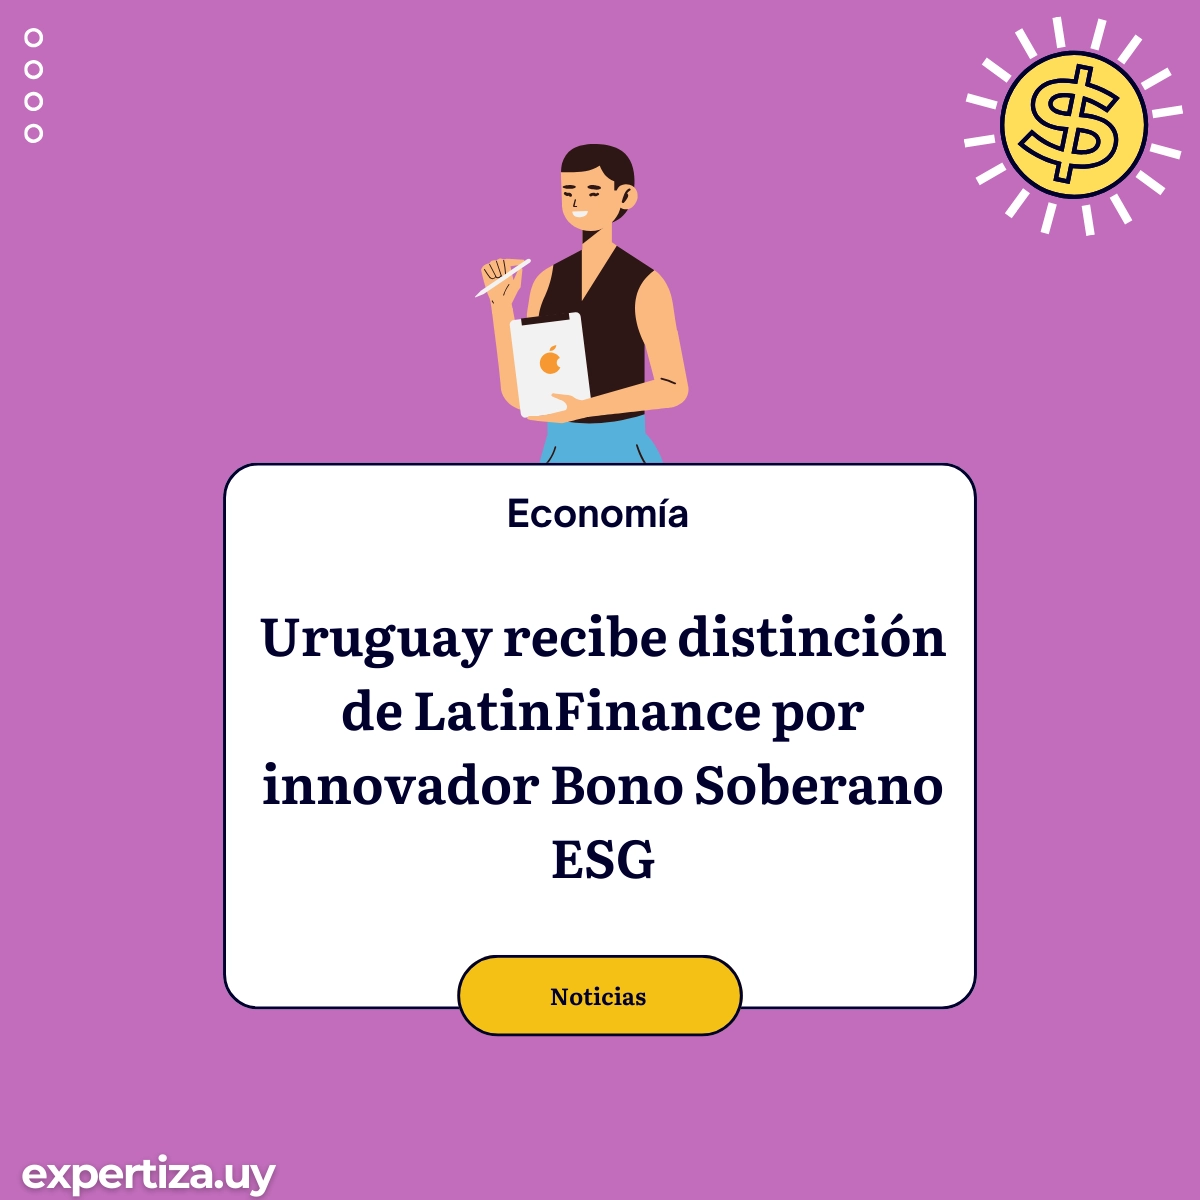 Uruguay recibe distinción de LatinFinance por innovador Bono Soberano ESG.